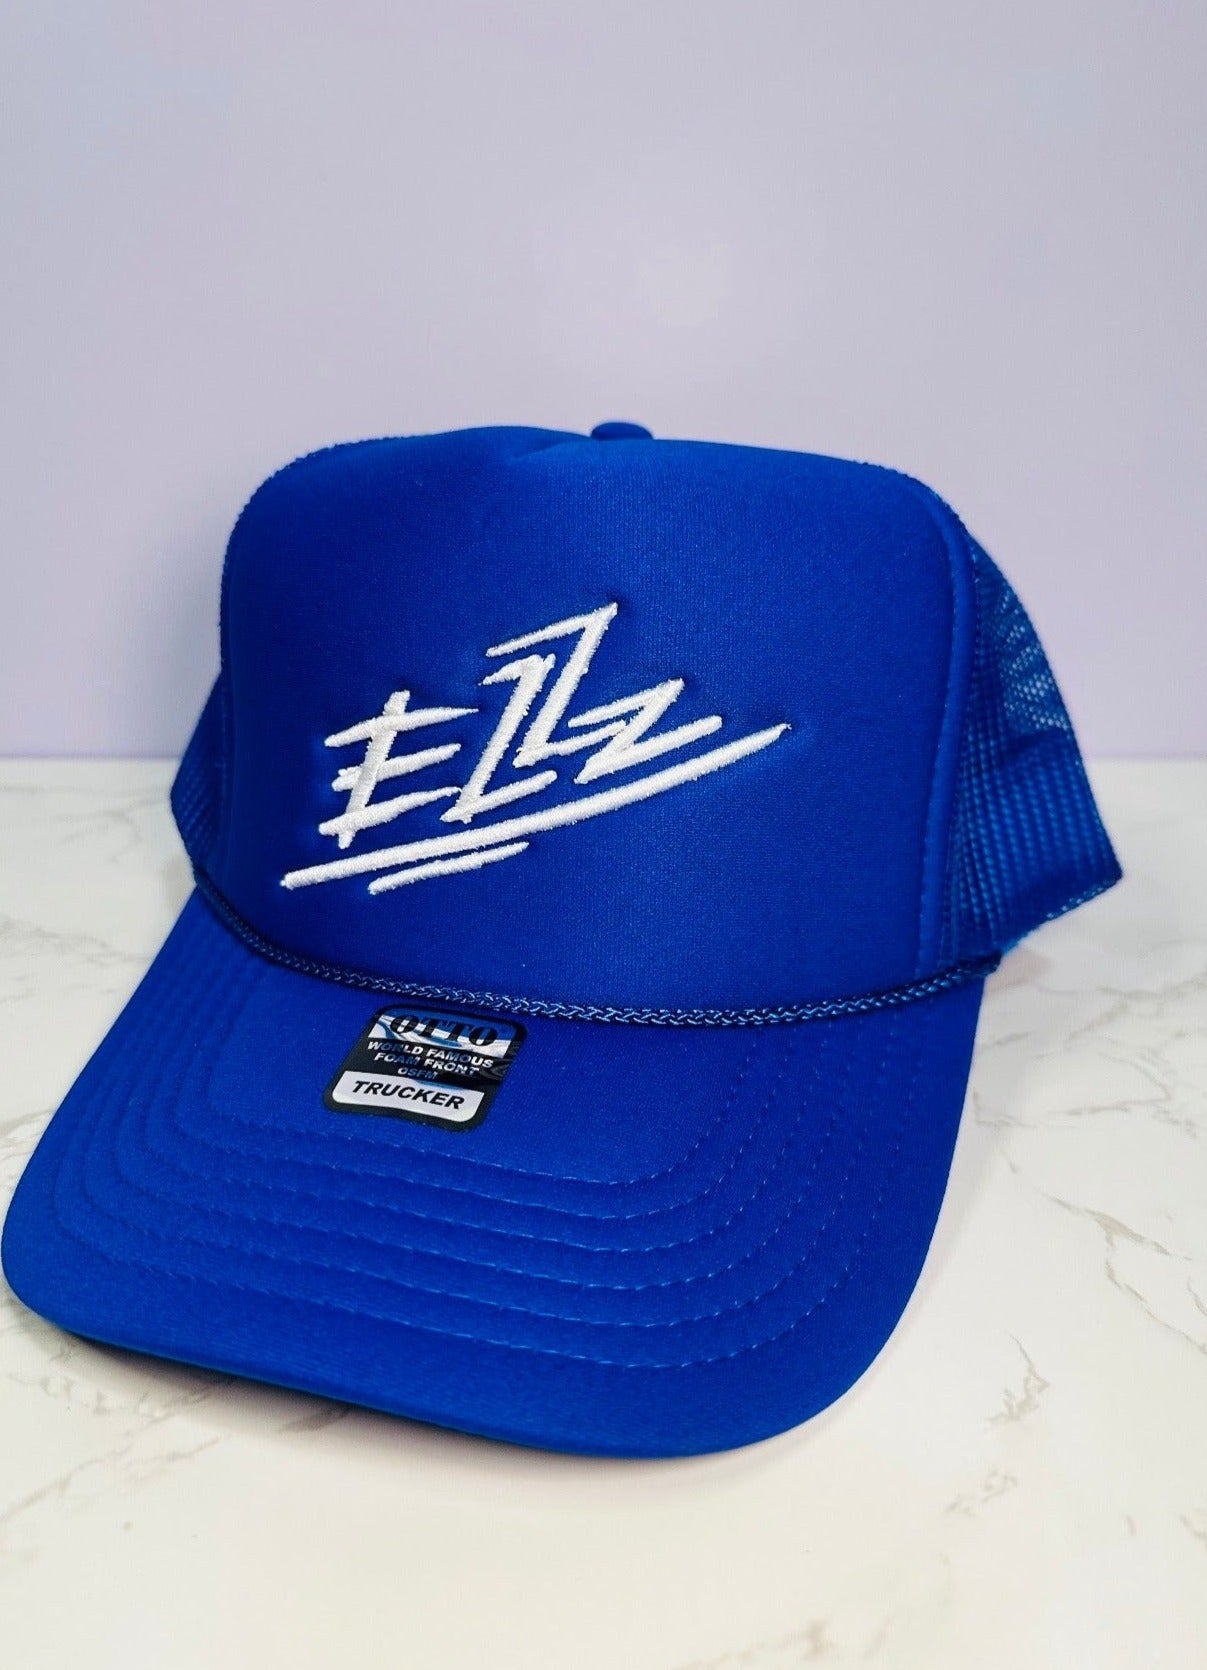 Blue Ezzz Trucker Hat